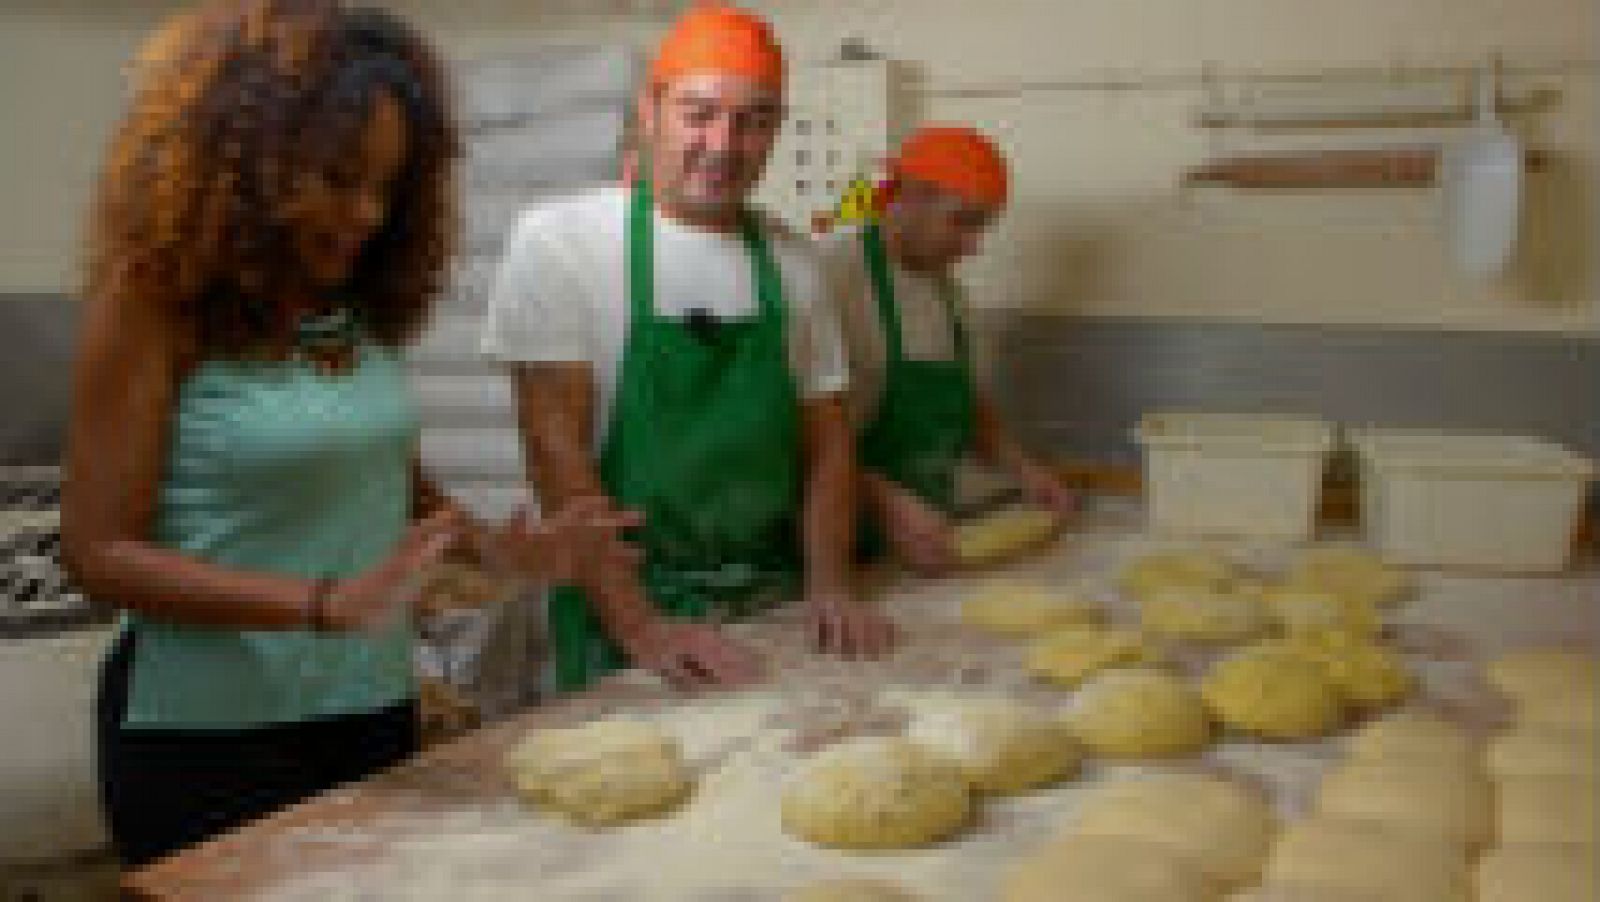 Cómo hacer pan casero